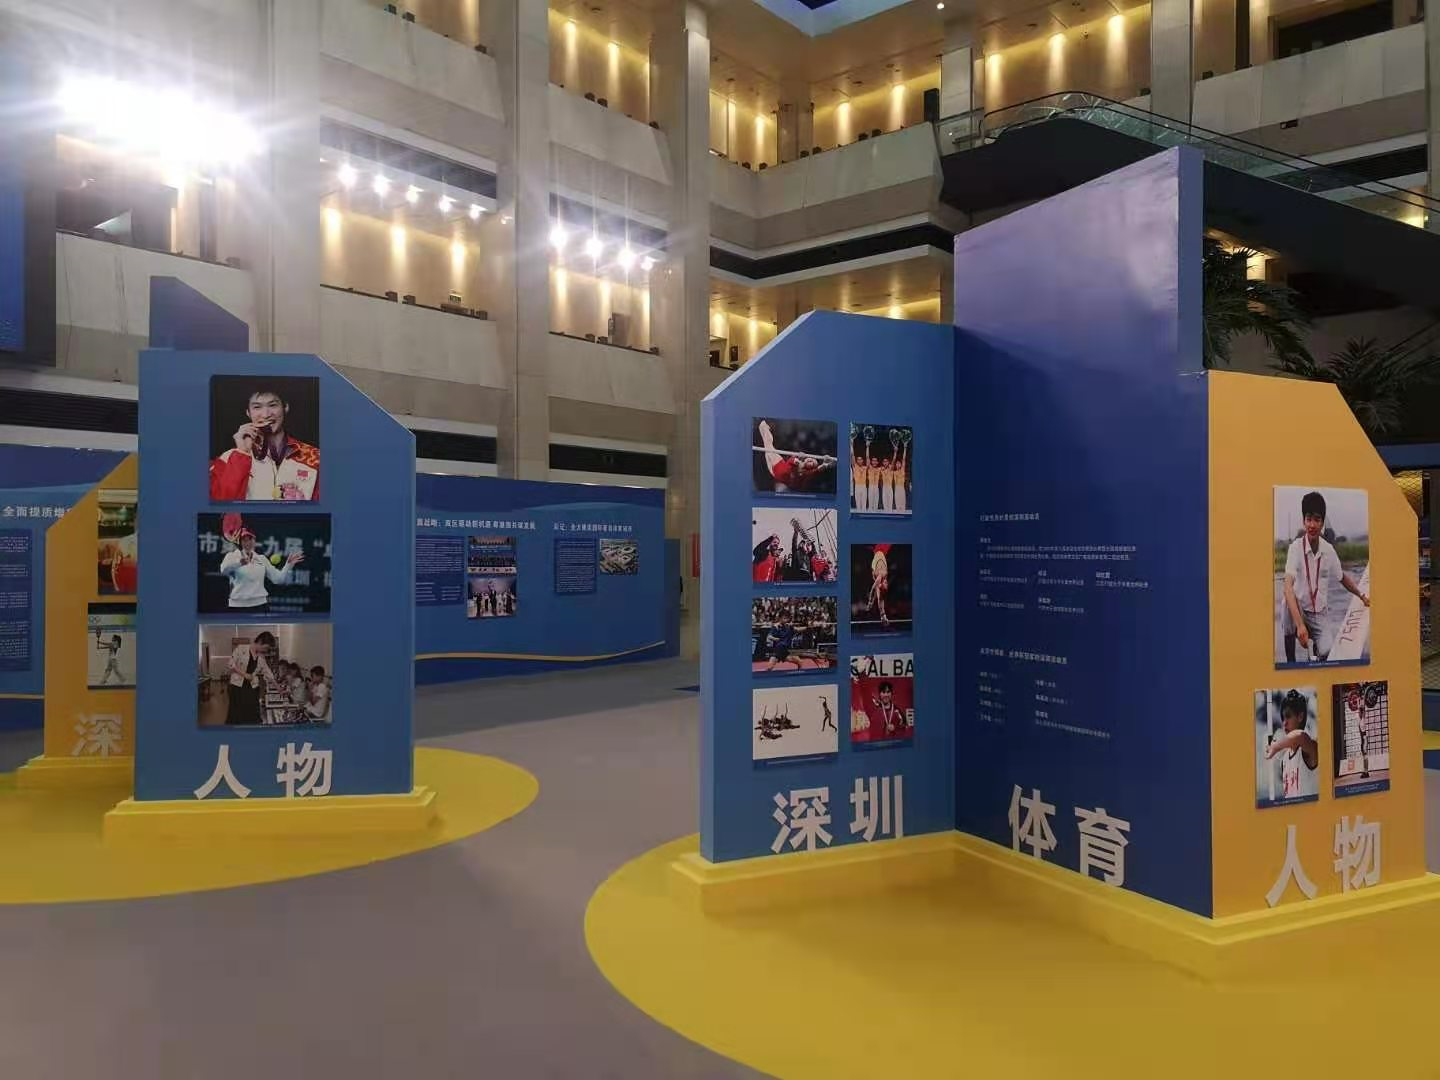  深圳经济特区建立40周年体育图片展开幕